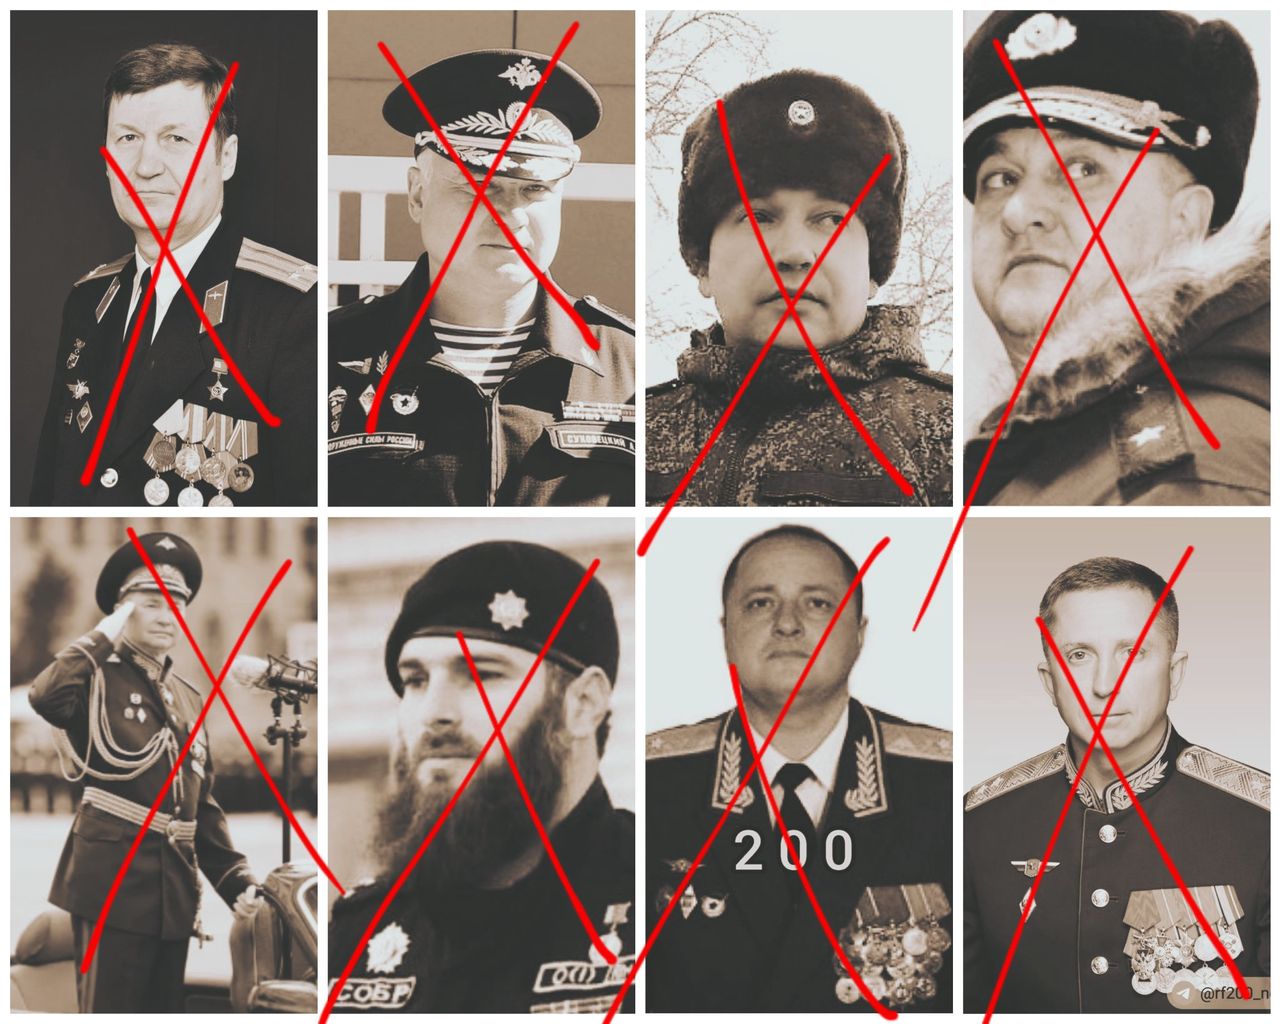 Zabity ósmy rosyjski generał. Ukraina publikuje listę z nazwiskami